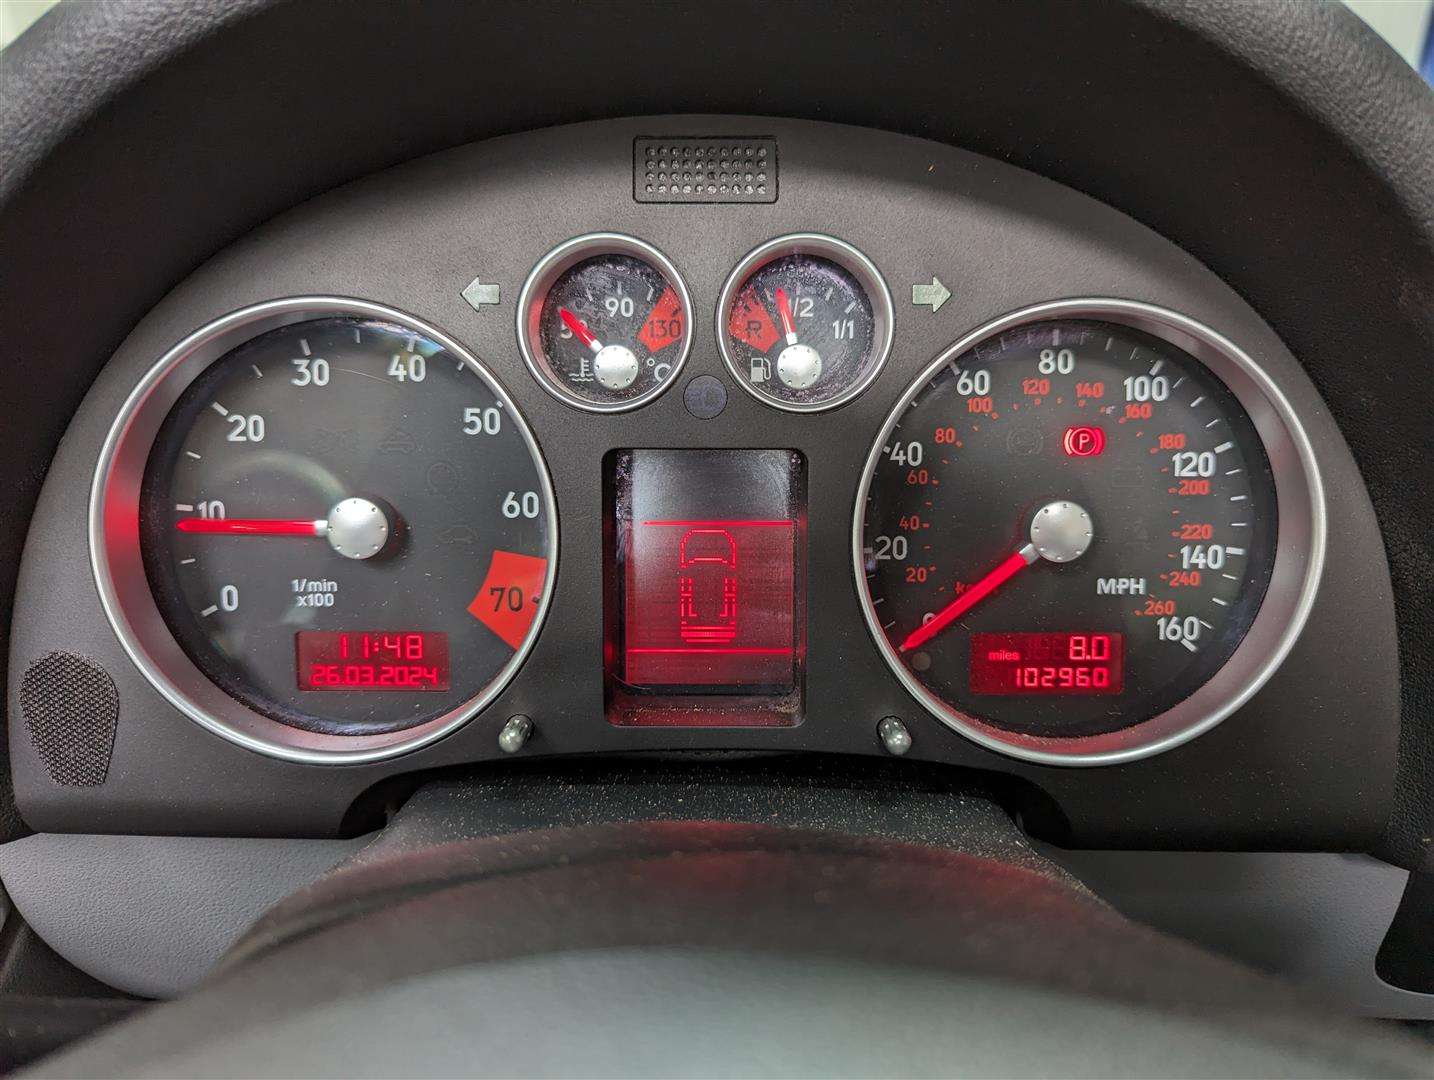 <p>2004 AUDI TT ROADSTER (150 BHP)</p>